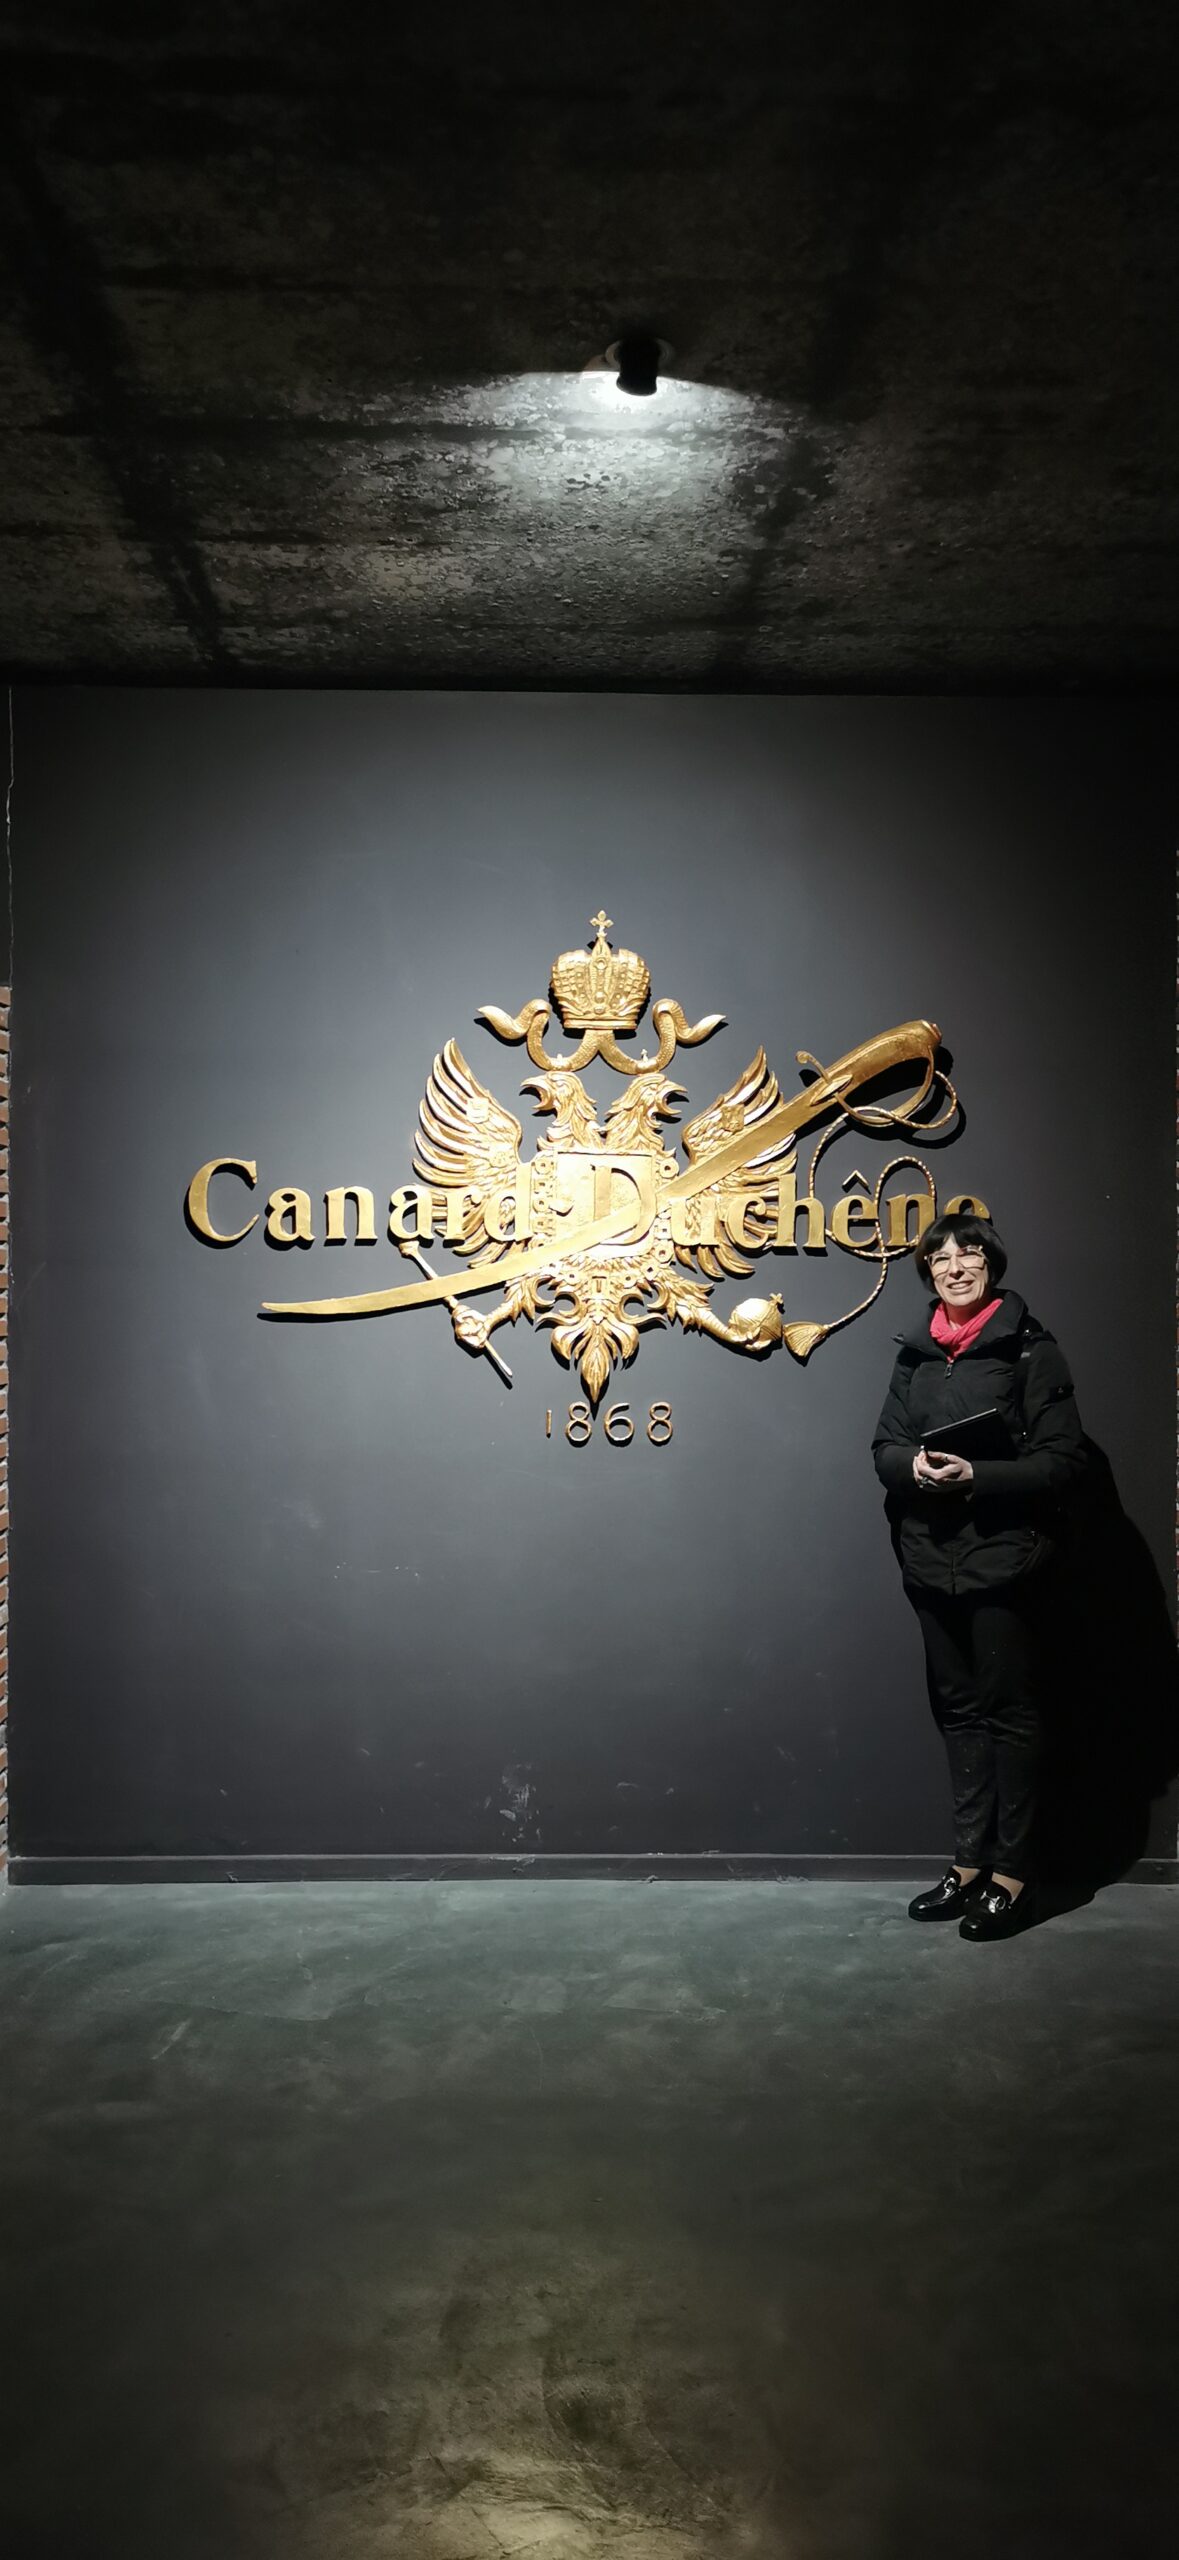 Champagne Canard-Duchêne, 3° tappa francese di bollicine, foto dell'autrice in primo piano durante la sua visita.